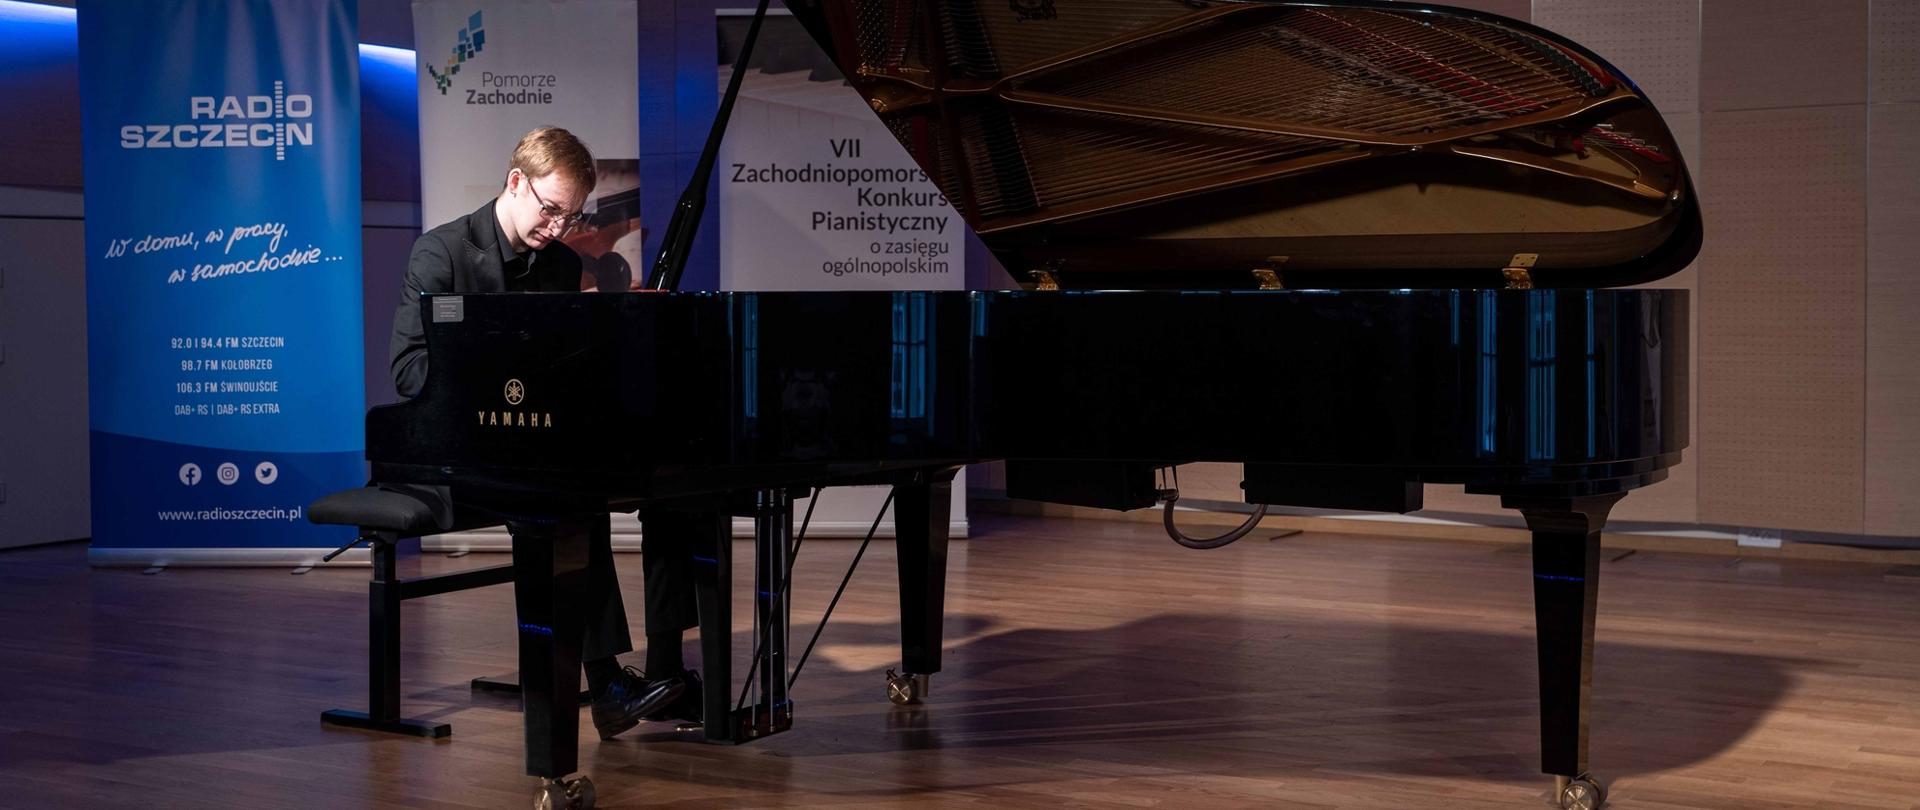 zdjęcie przedstawia wykonawcę grającego na fortepianie na scenie sali koncertowej, w tle banery Radia Szczecin, Pomorza Zachodniego oraz konkursu